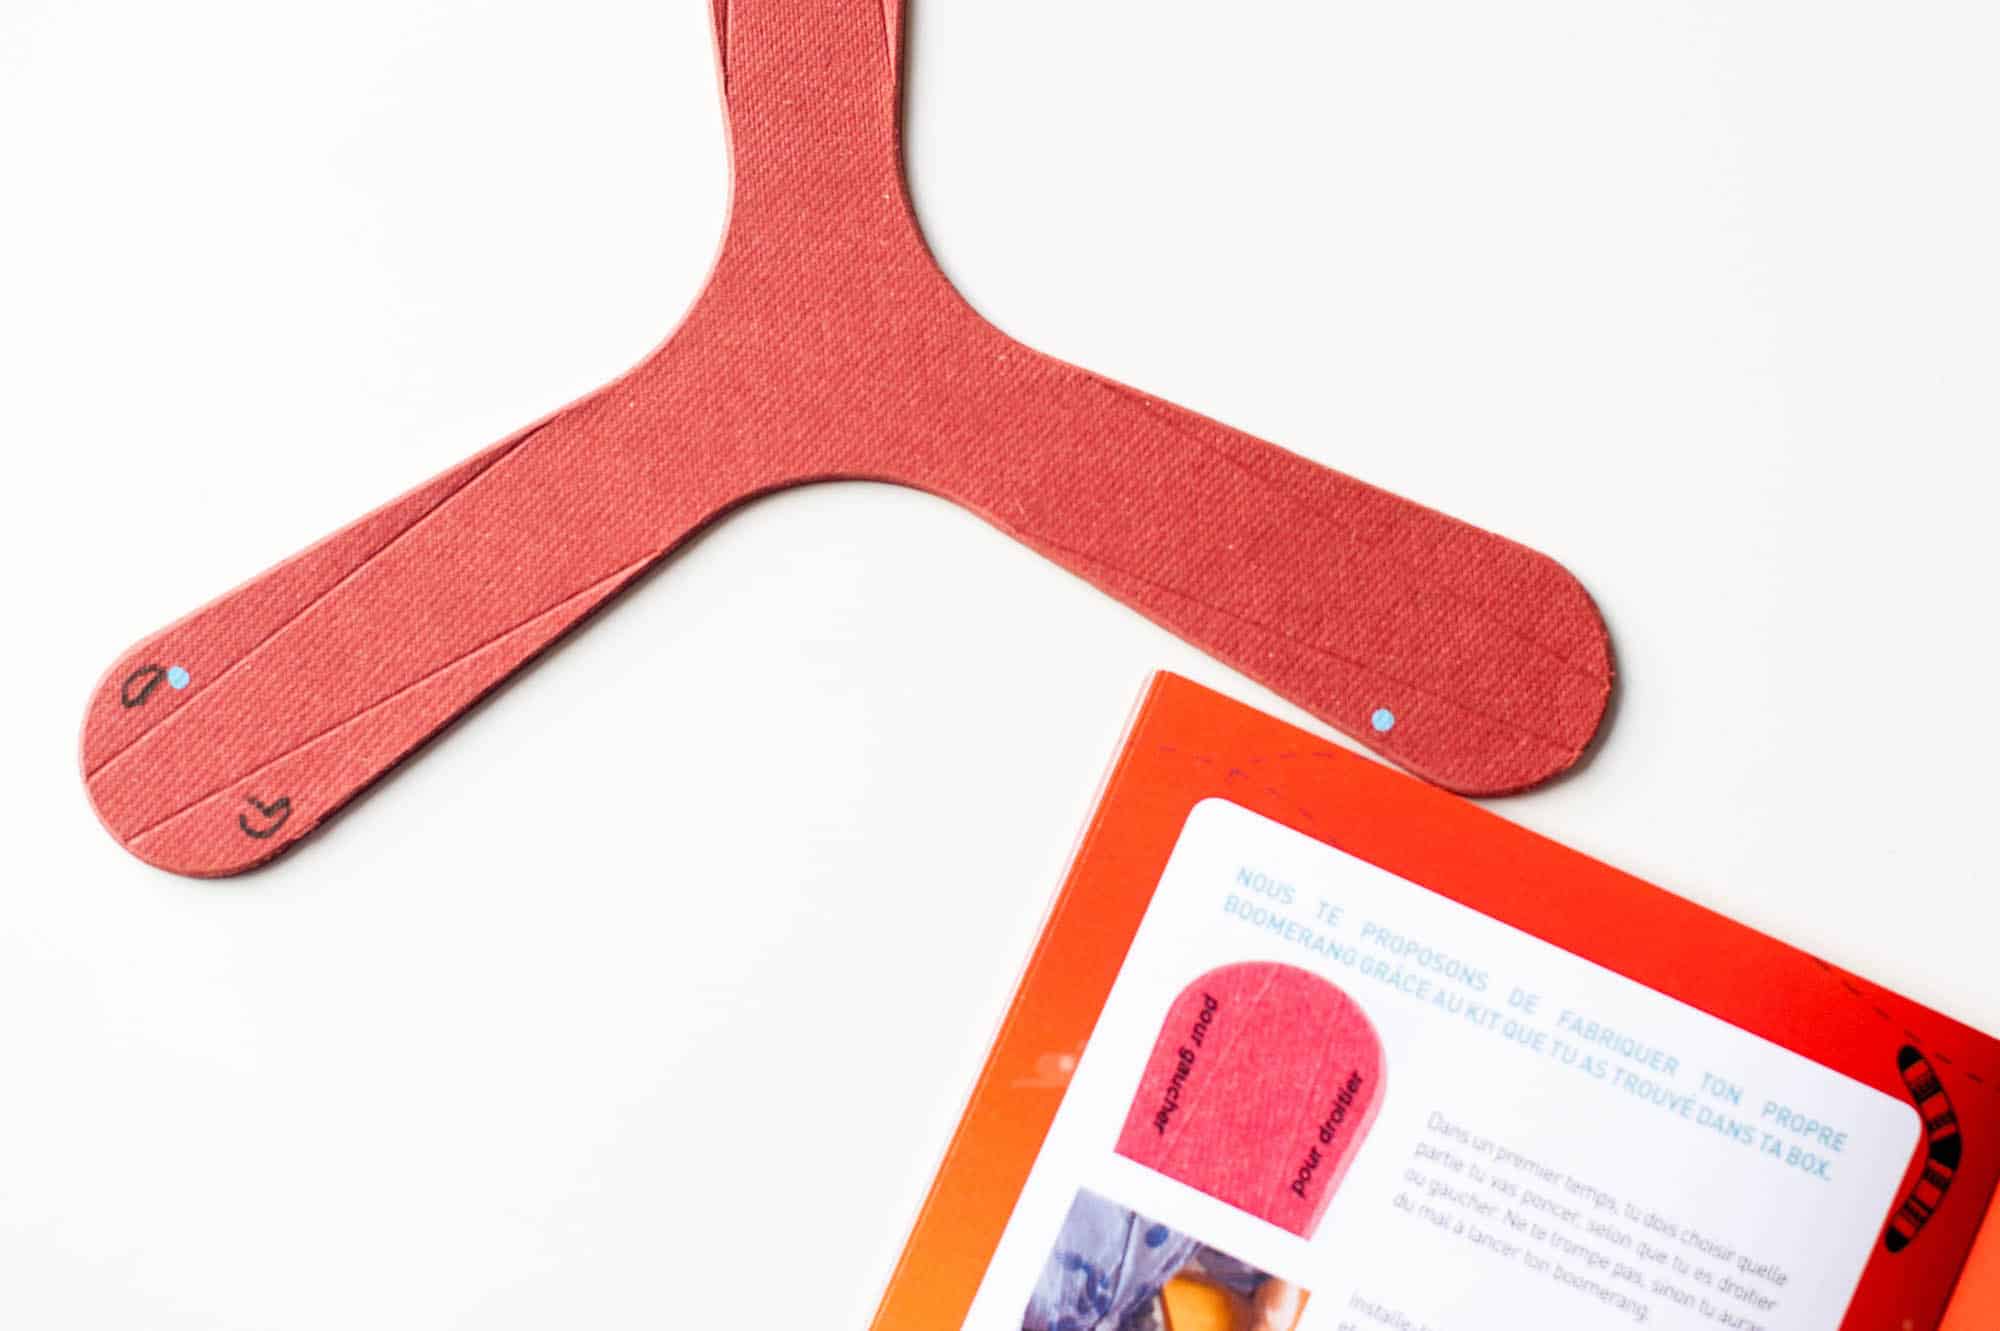 Kit pour fabriquer son propre boomerang